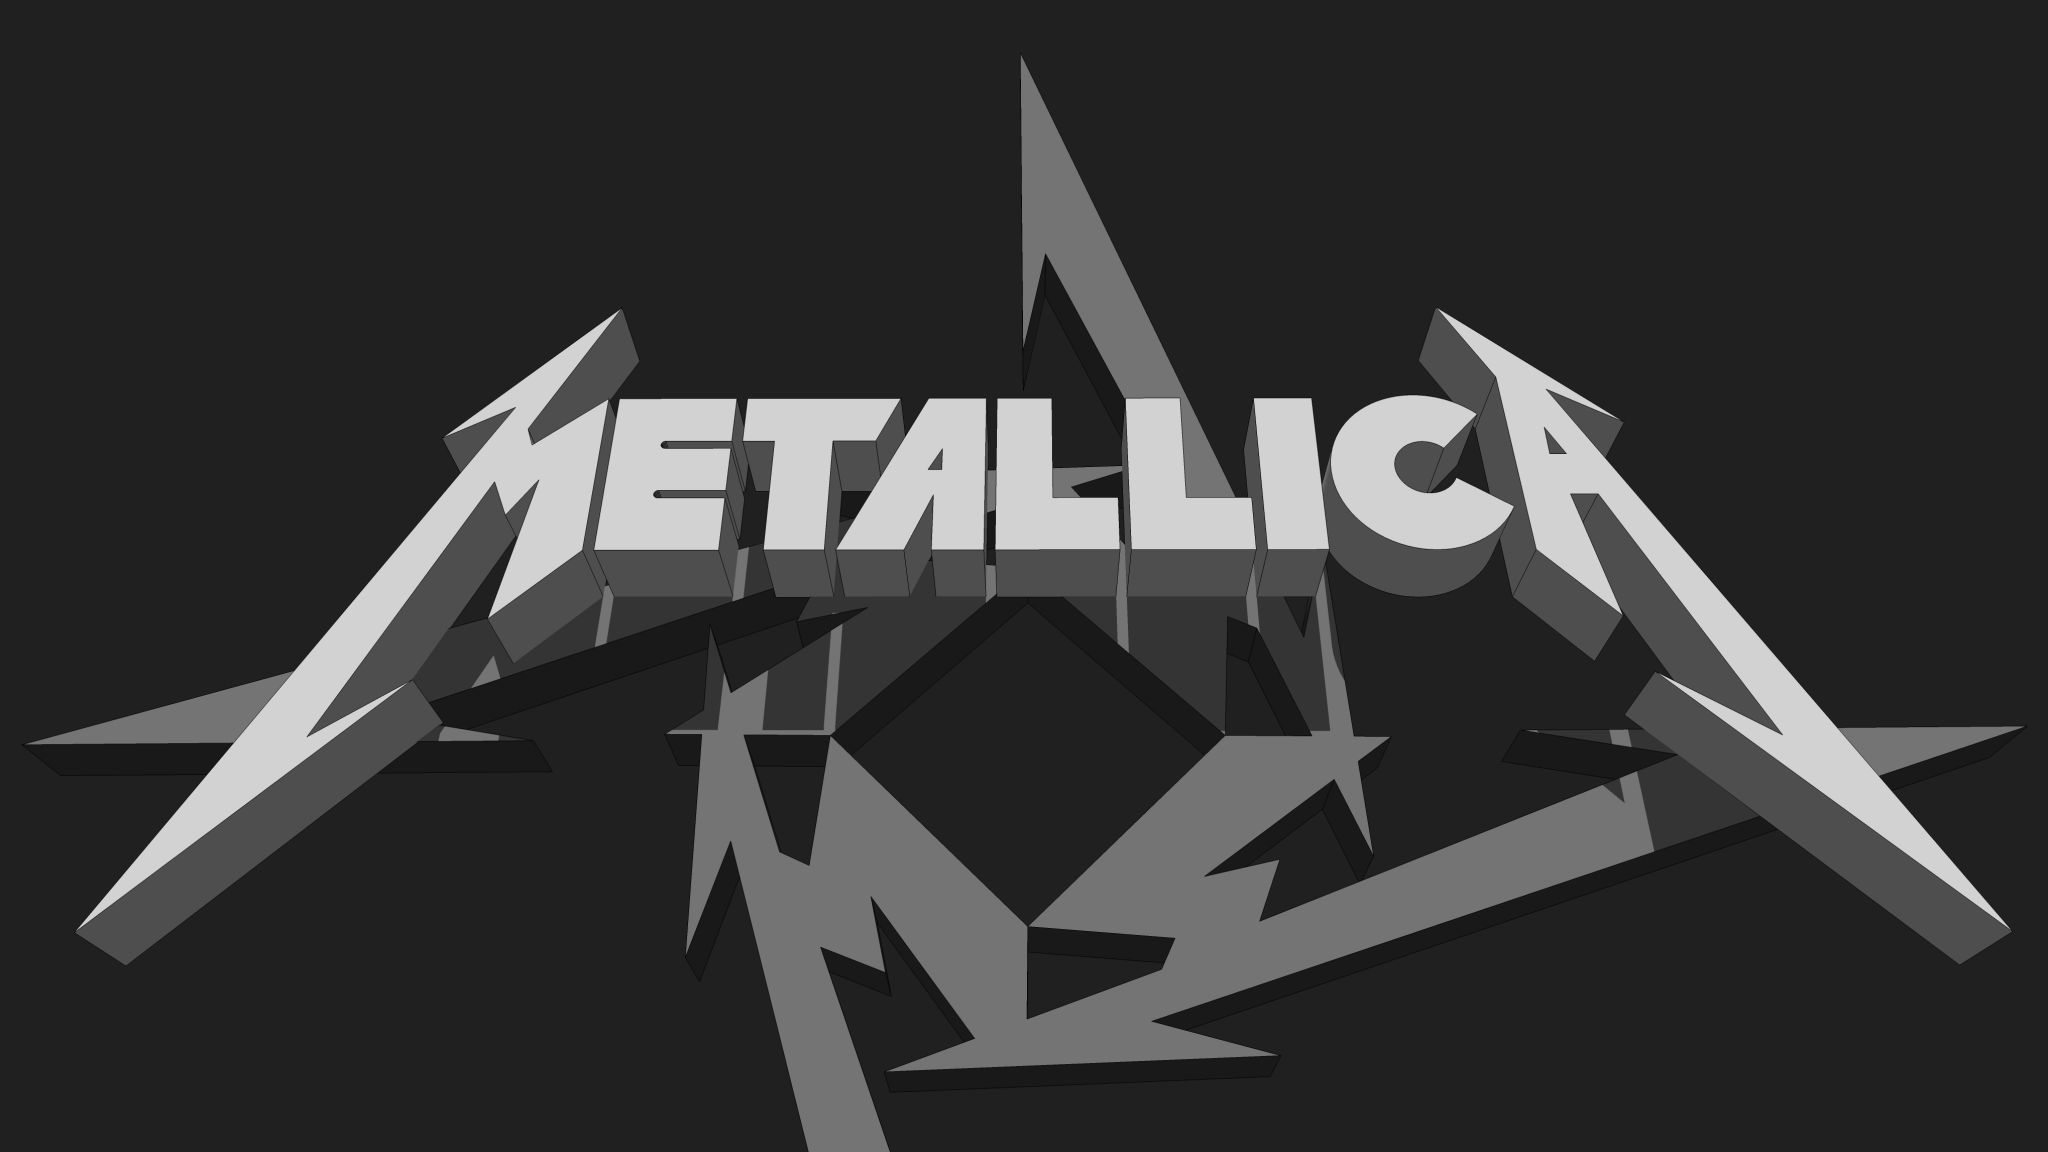 Meticalla Logo - Metallica Logo & Star Symbol - Album on Imgur